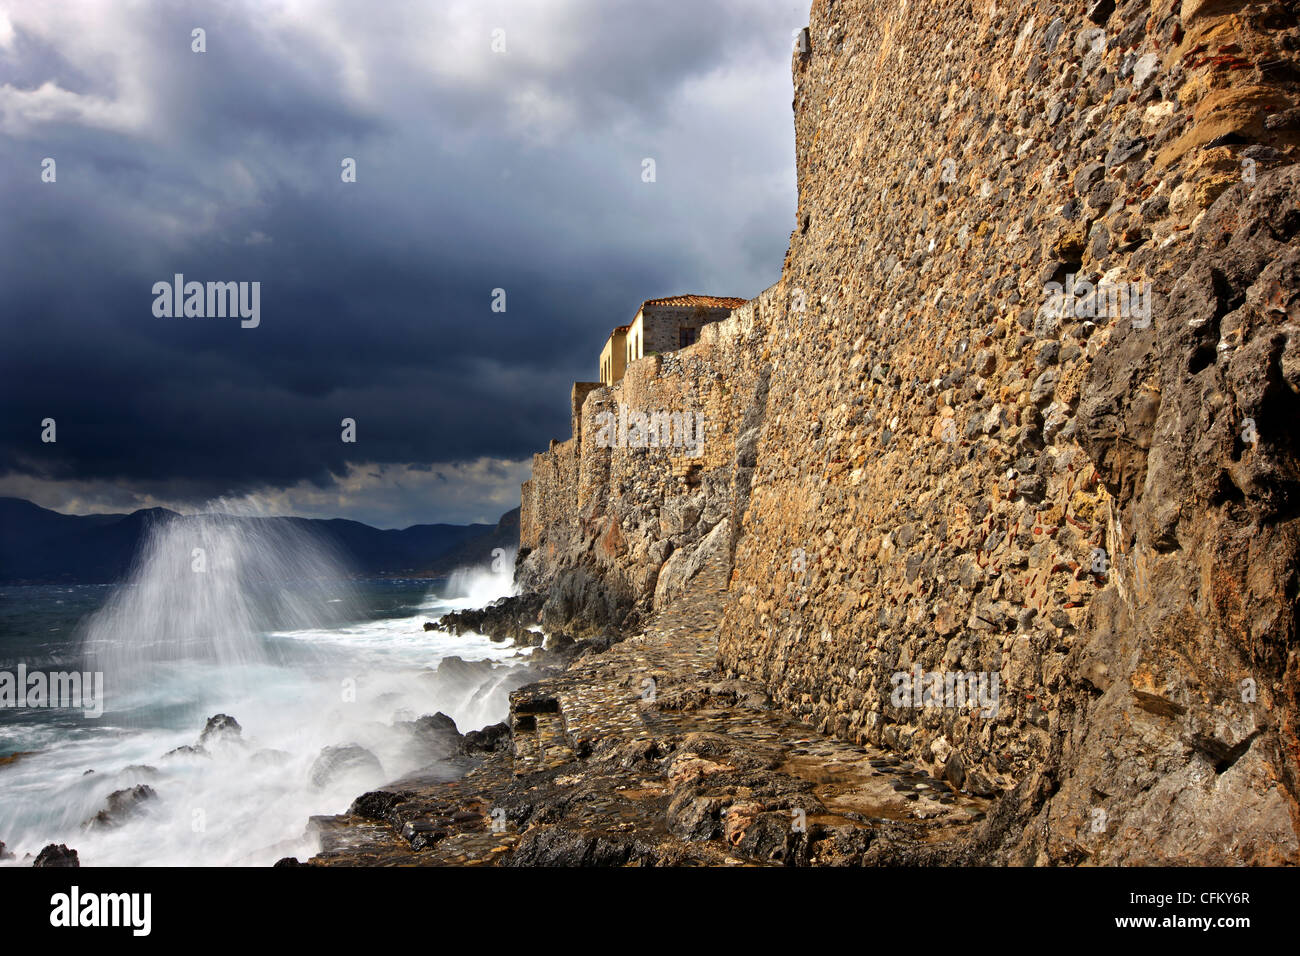 Teil der großen Wände der Castletown von Monemvasia, in der Nähe von "Portello", das einzige Tor des Schlosses bis zum Meer. Griechenland Stockfoto